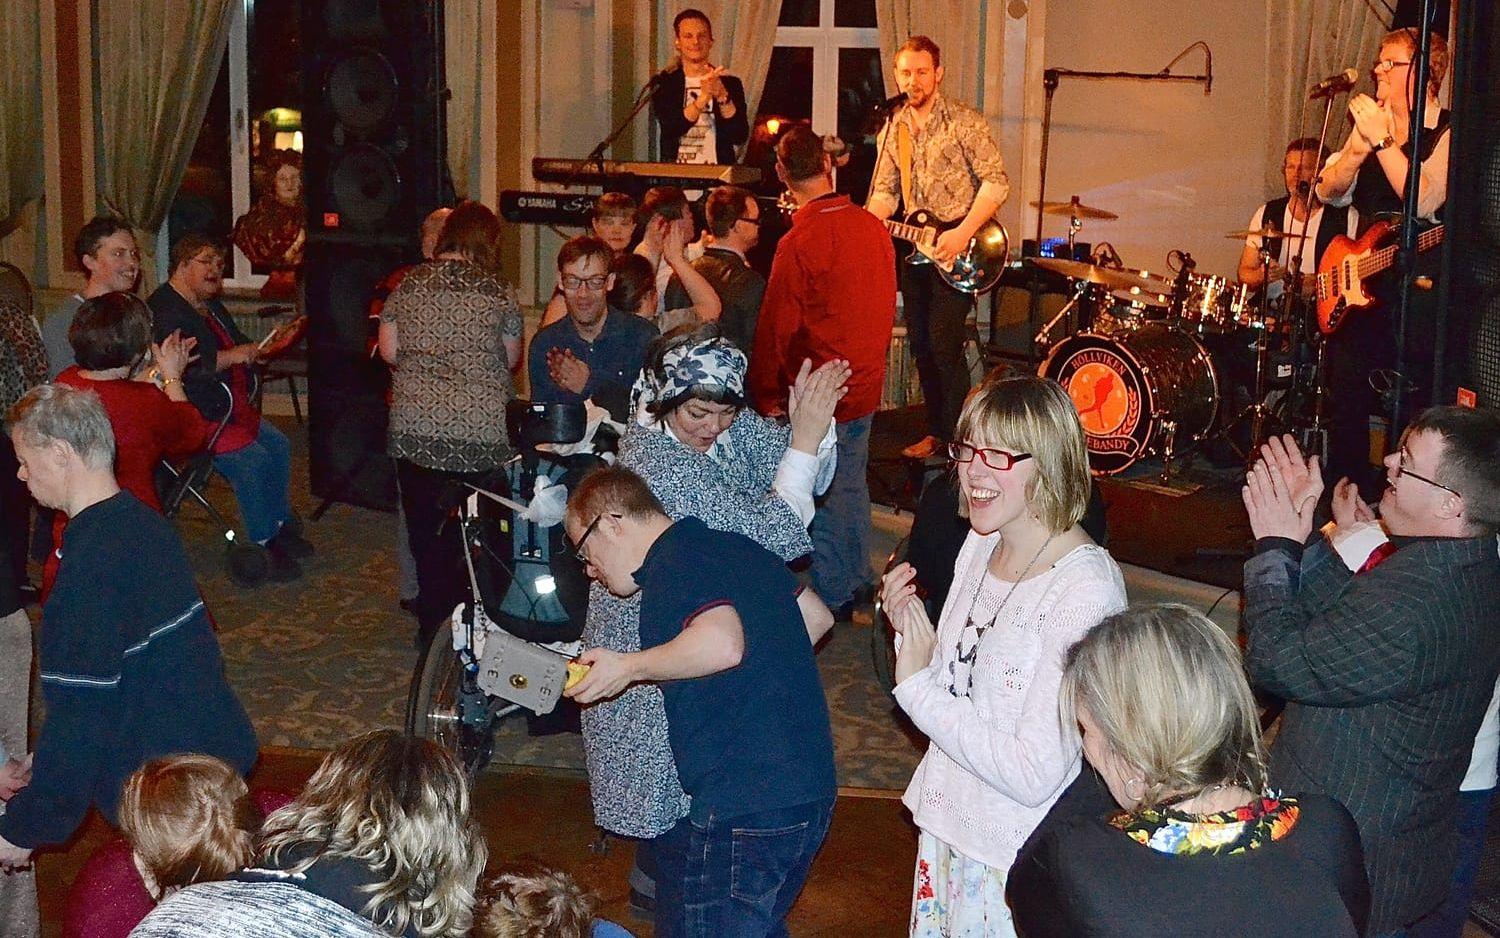 Medryckande. Dansbandet Lives från Trelleborg är favorit hos många. Med sin publikkontakt och förmåga att välja låtar som går hem fyller de snabbt dansgolvet.